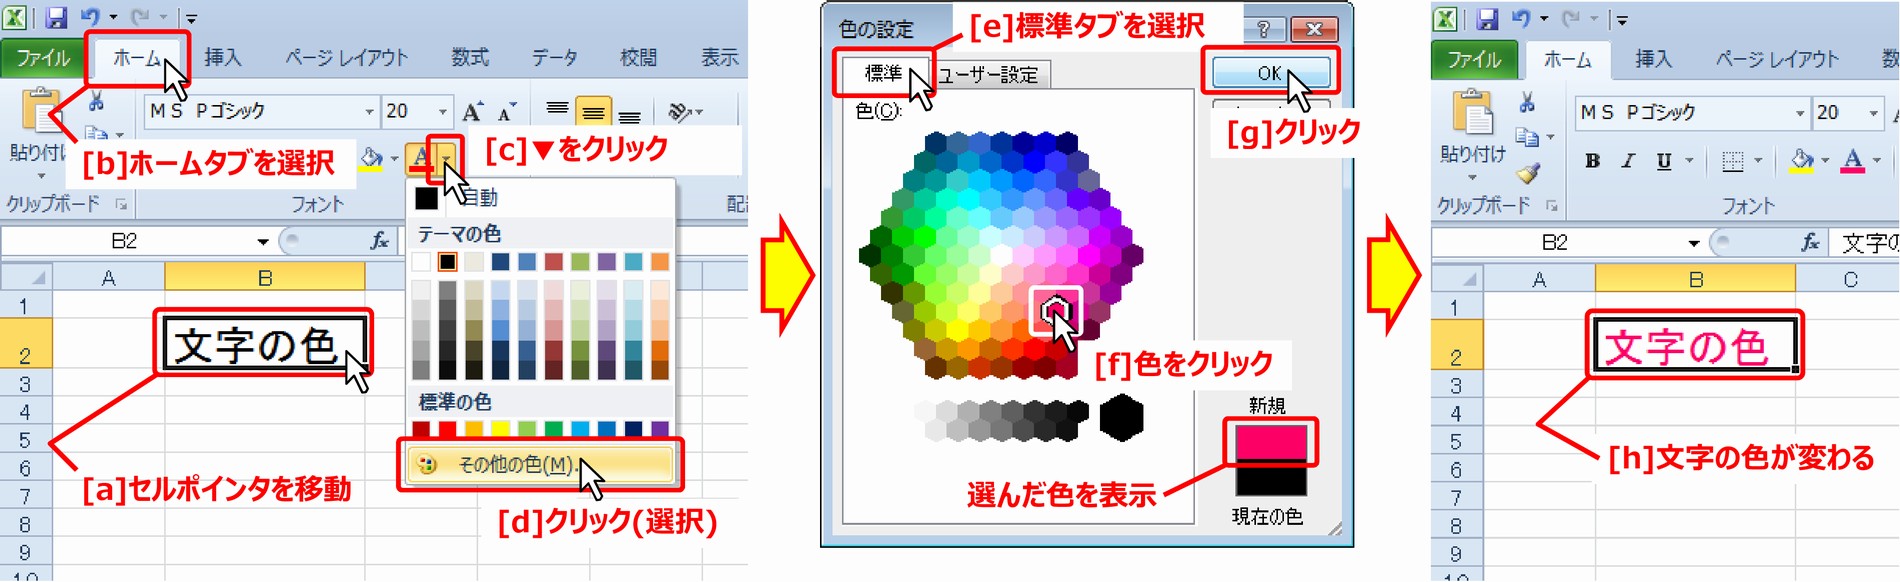 (2) セル全体の文字色の変更(拡張144色)